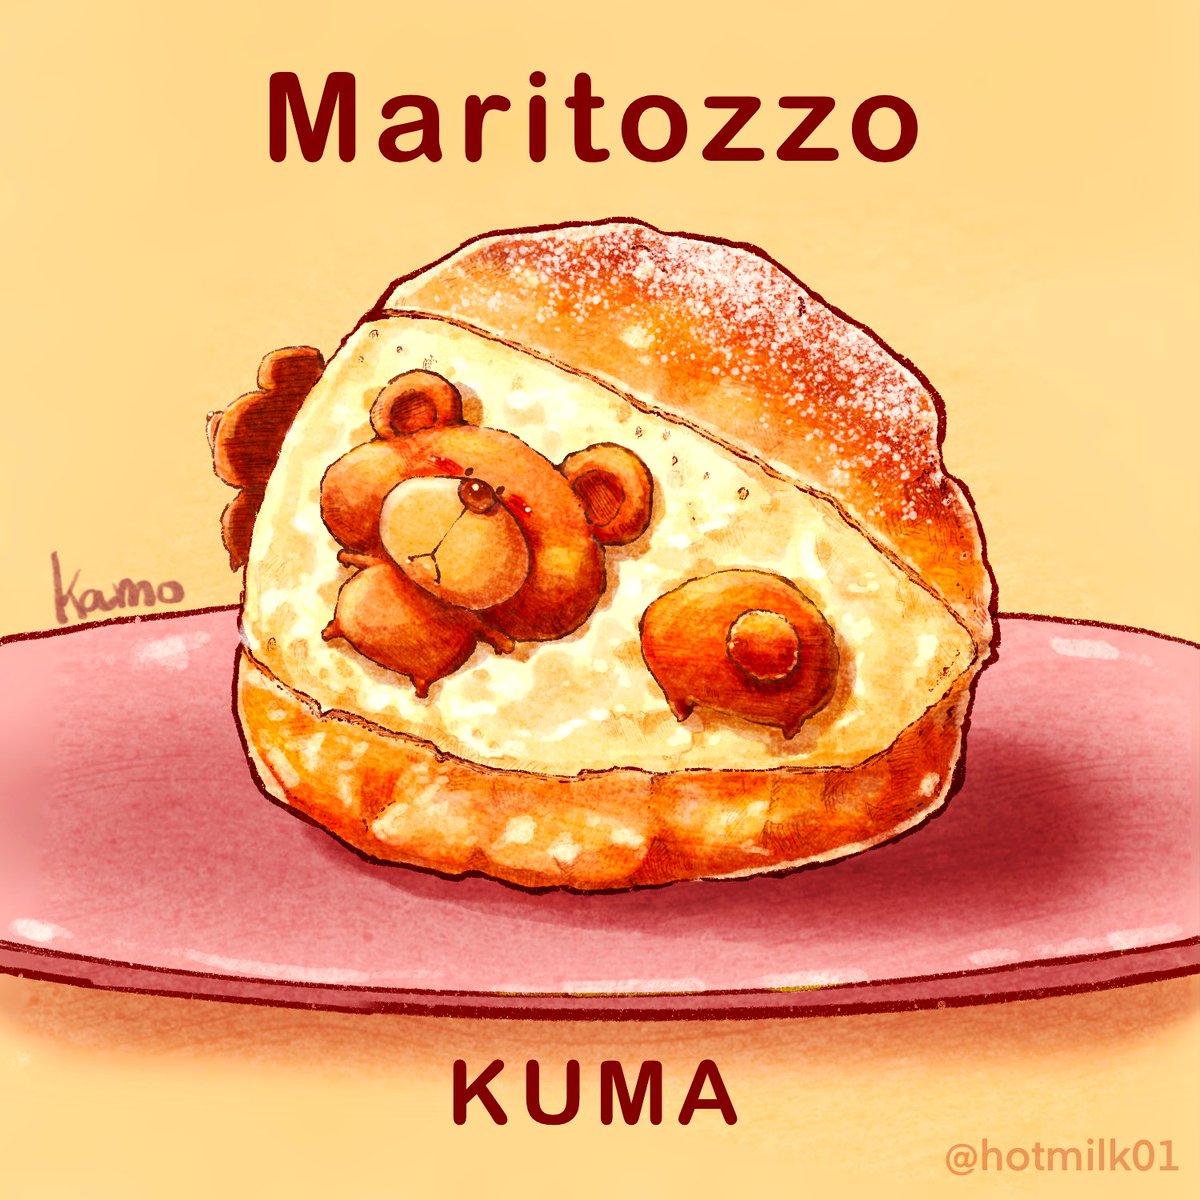 Kamo 食べ物 動物ｲﾗｽﾄ マリトッツォ Kuma マリトッツォ 食べ物イラスト T Co 9atojwjnb6 Twitter